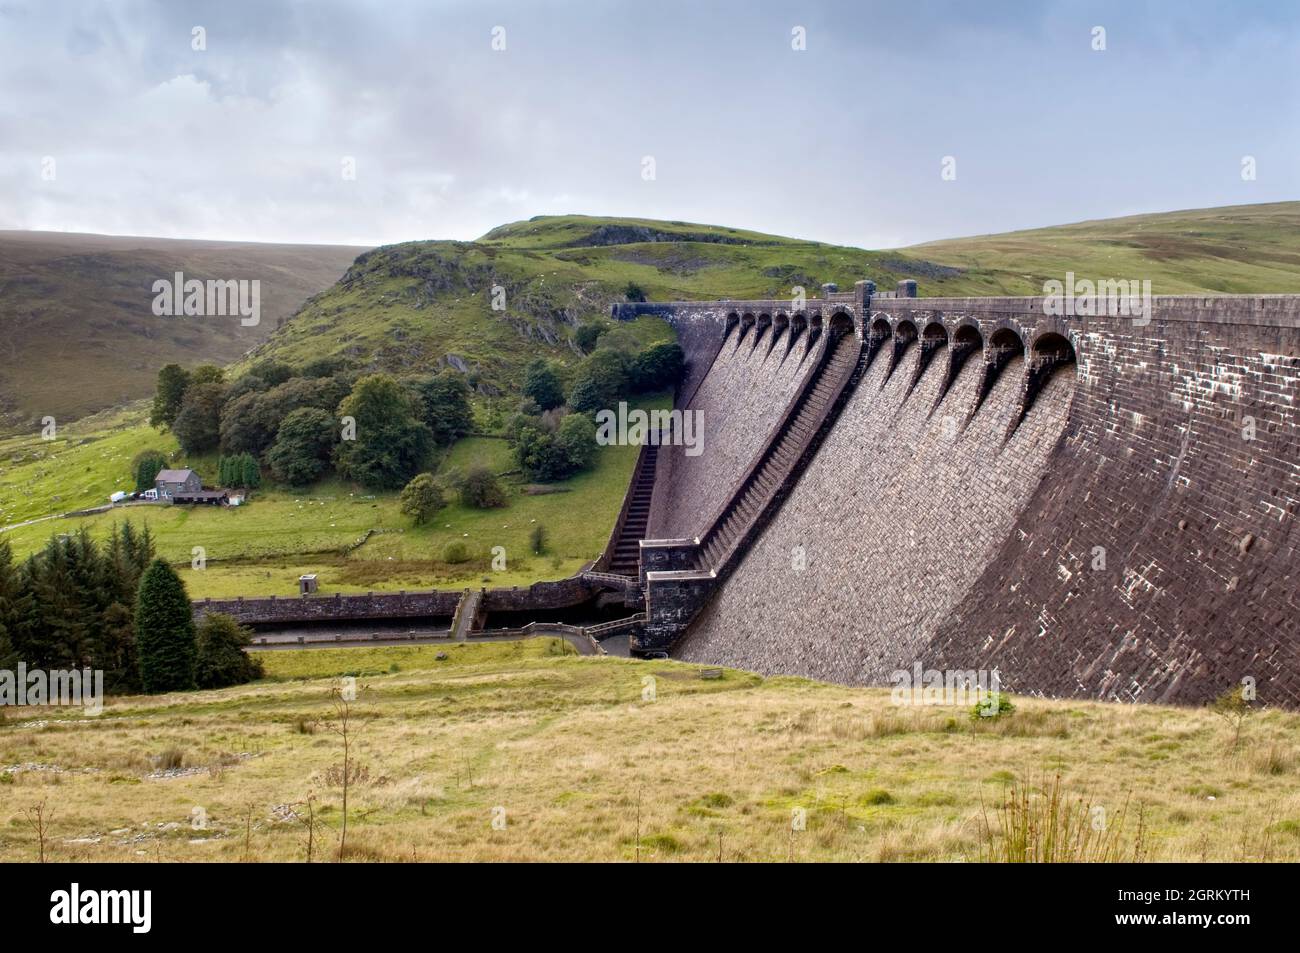 Claerwen dam in Elan valley, Rhayader, Wales Stock Photo